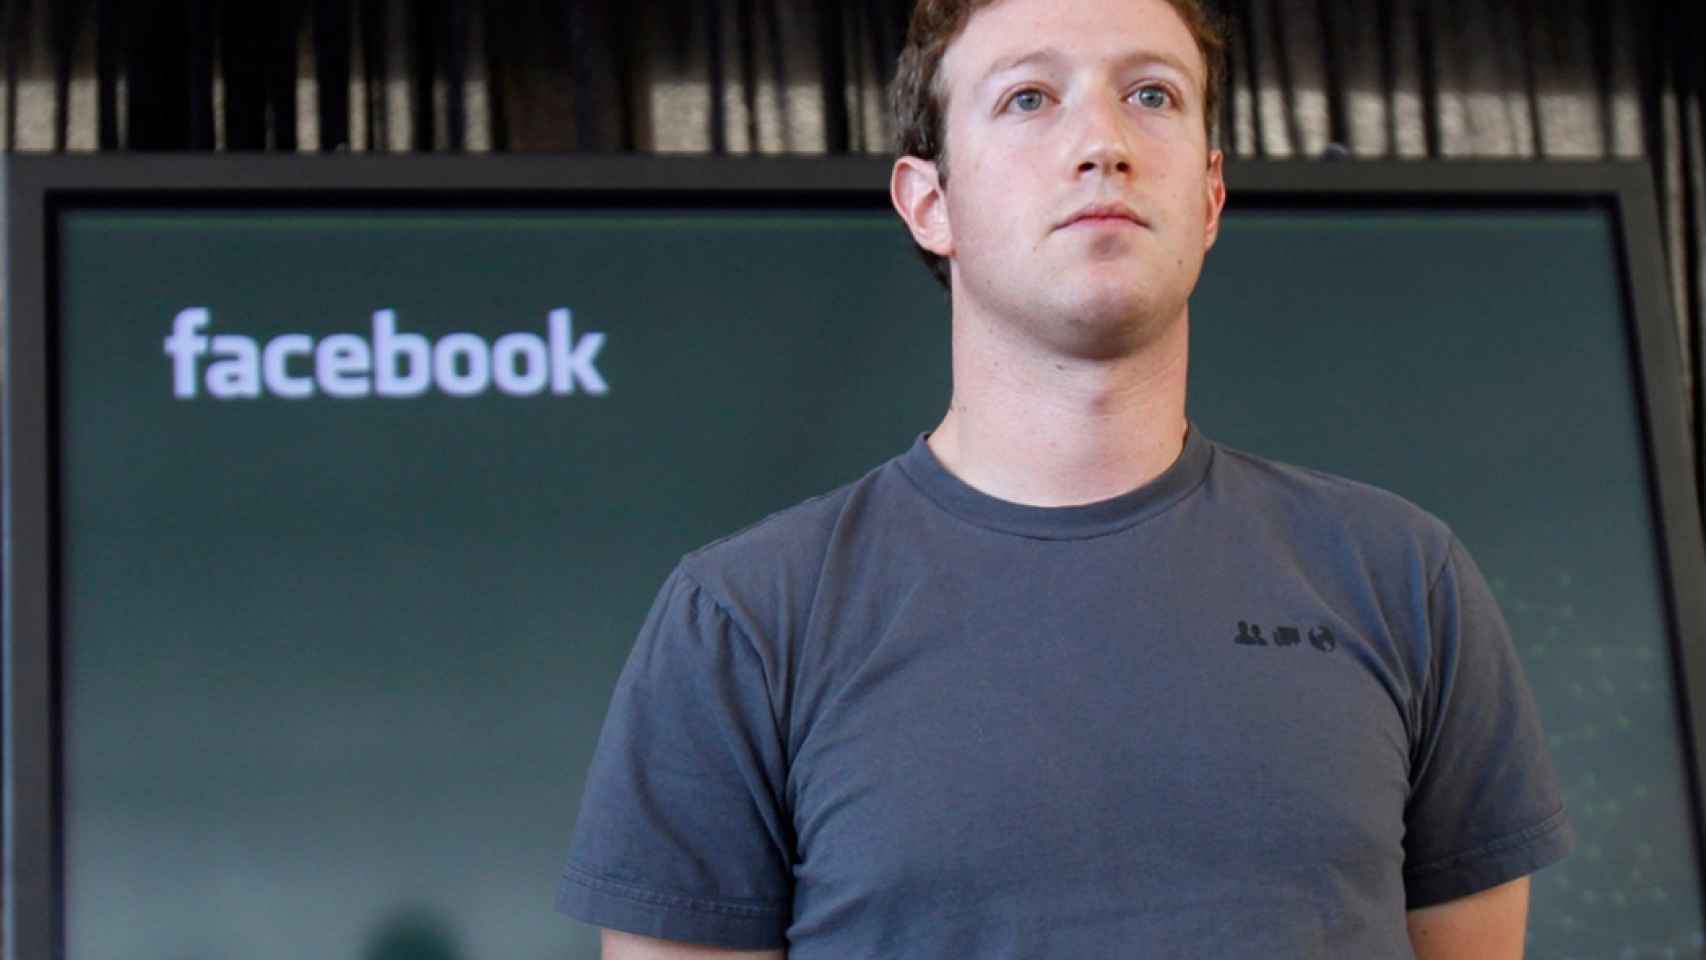 Marck Zuckerberg, CEO y fundador de Facebook.